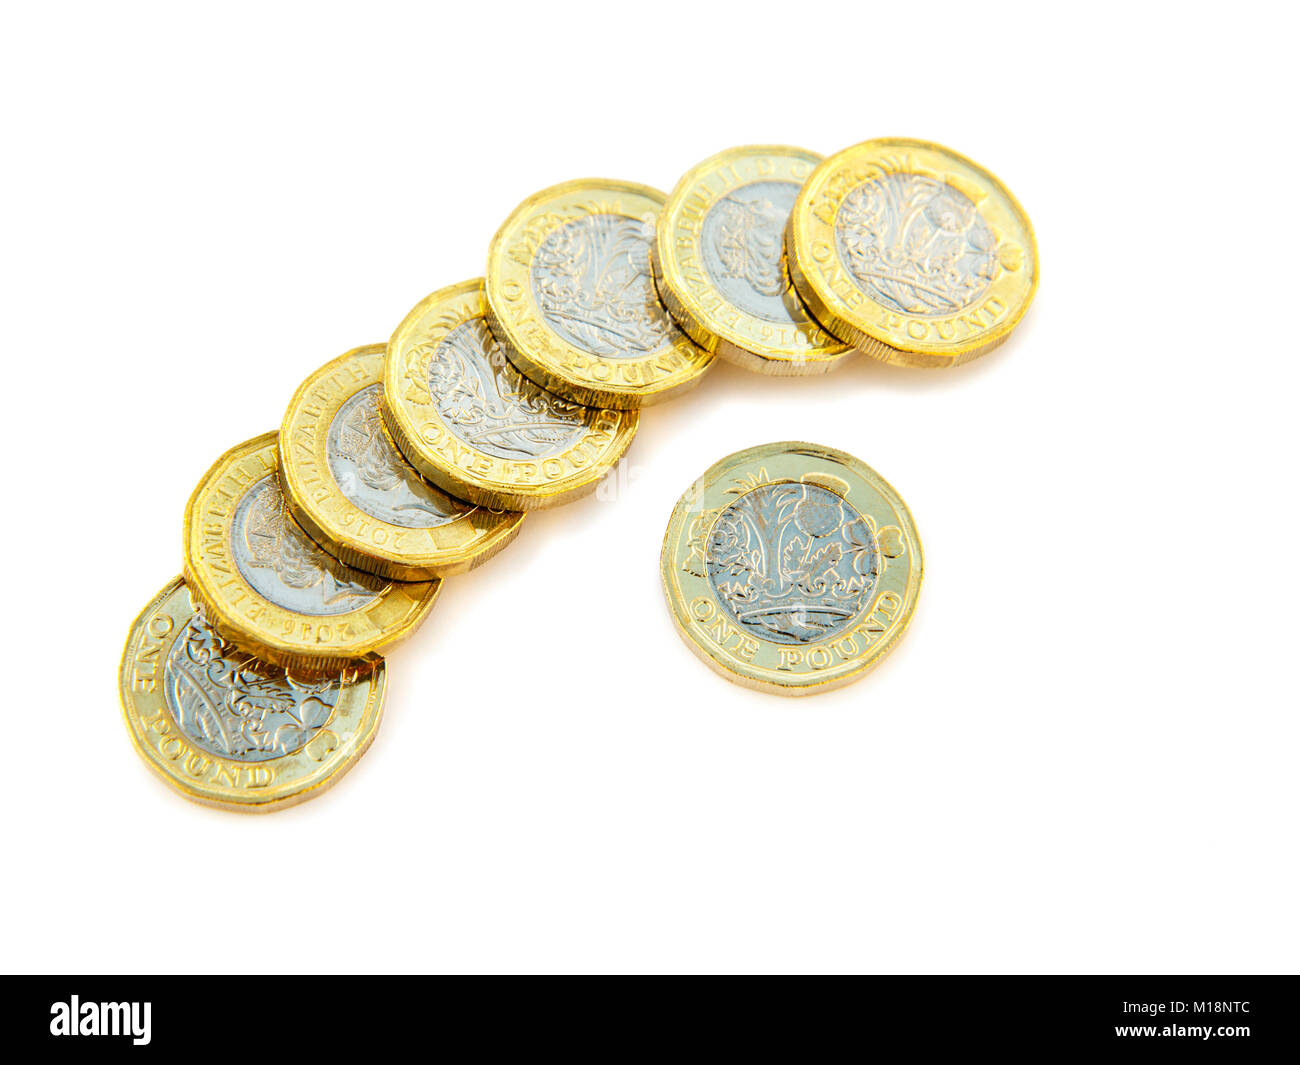 British nuovo 12 lati una libbra di monete £ GBP libbre contanti Sterling denaro UK Gran Bretagna. Intaglio e isolato su uno sfondo bianco Foto Stock